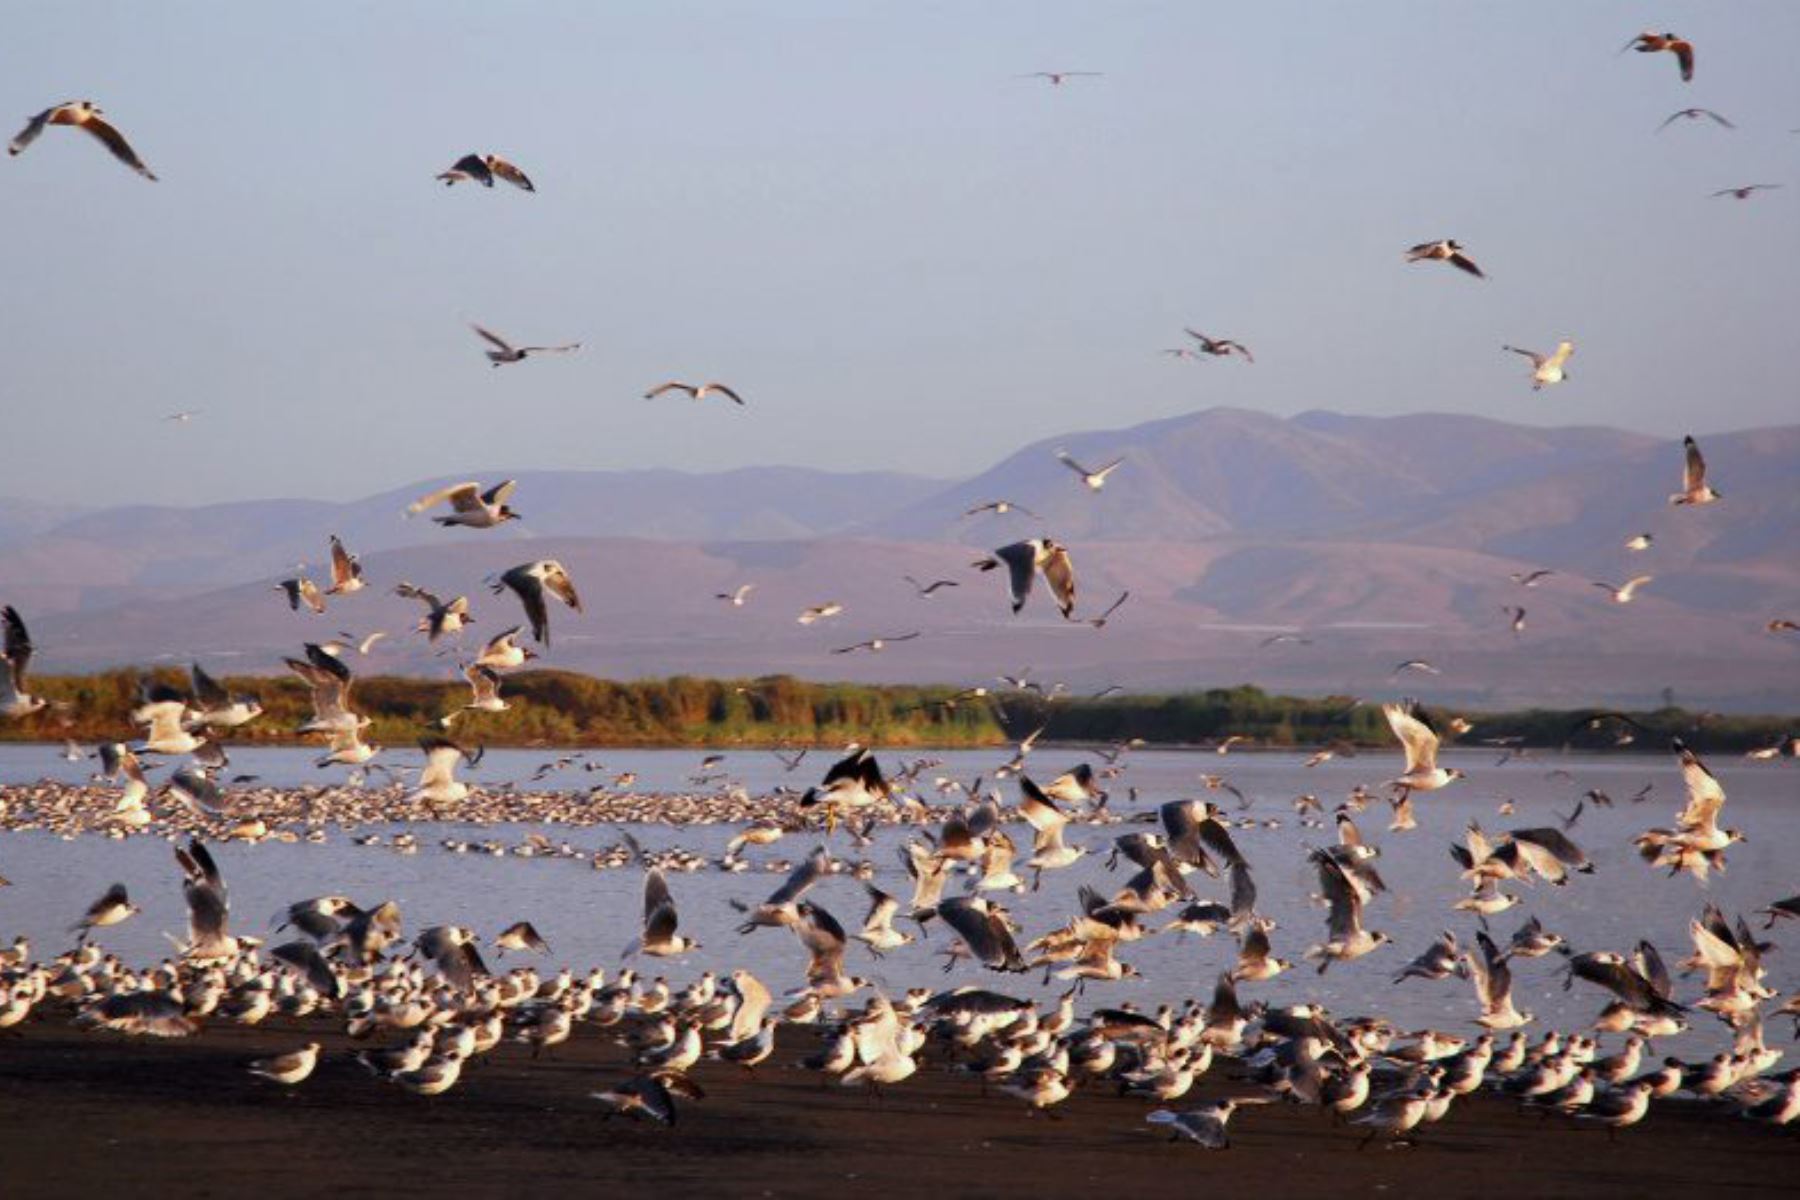 Perú se encuentra entre los tres países con mayor diversidad de aves del planeta. De las 1,878 especies registradas en su territorio, más de 130 son consideradas especies migratorias.